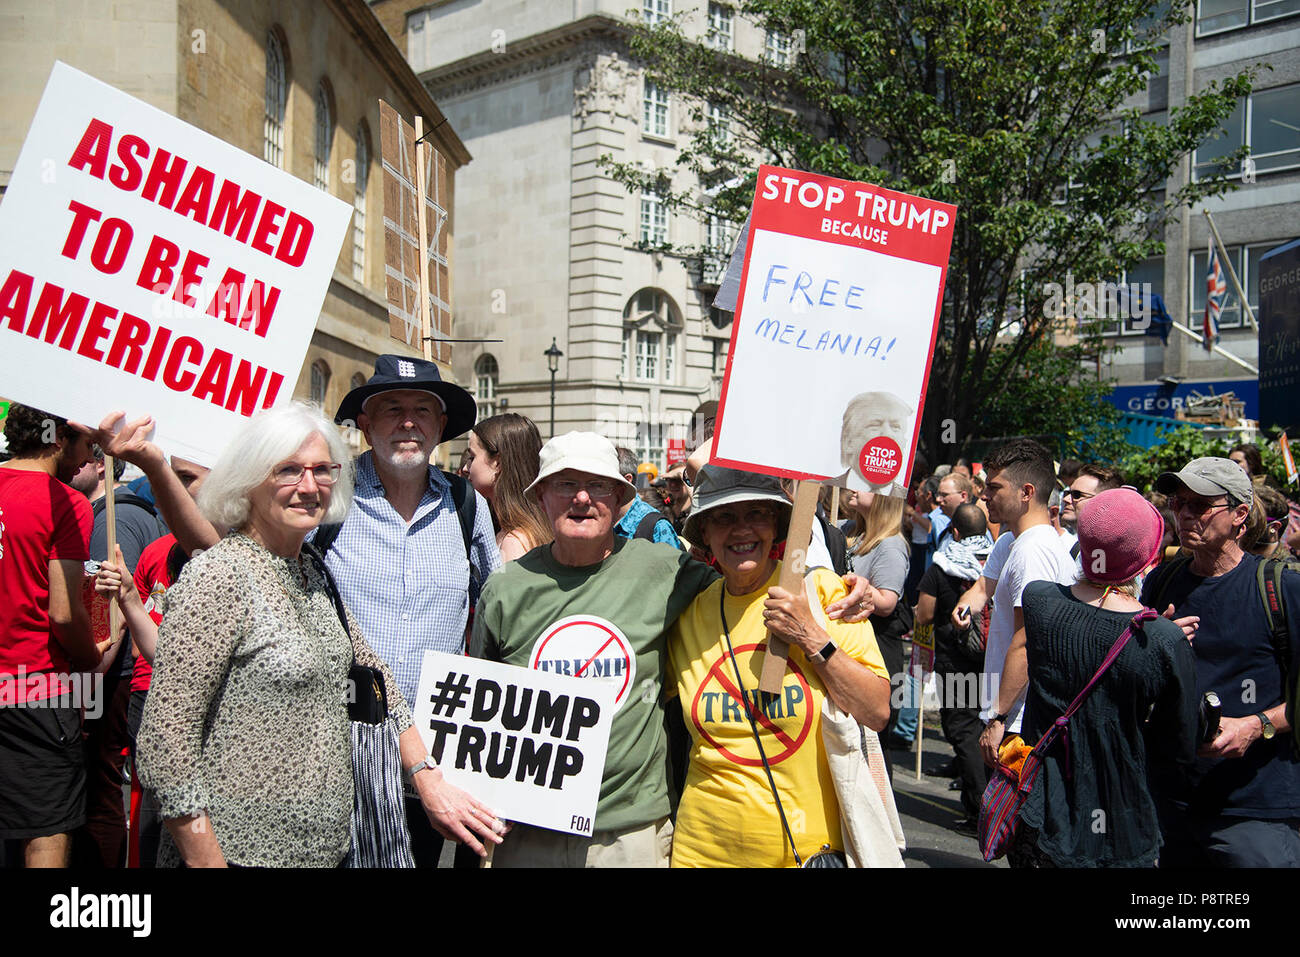 Londres, Royaume-Uni. 13 juillet 2018. Protestation d'atout - Manifestation contre l'atout de Donald sur visite au Royaume-Uni. Crédit : A. Bennett Banque D'Images